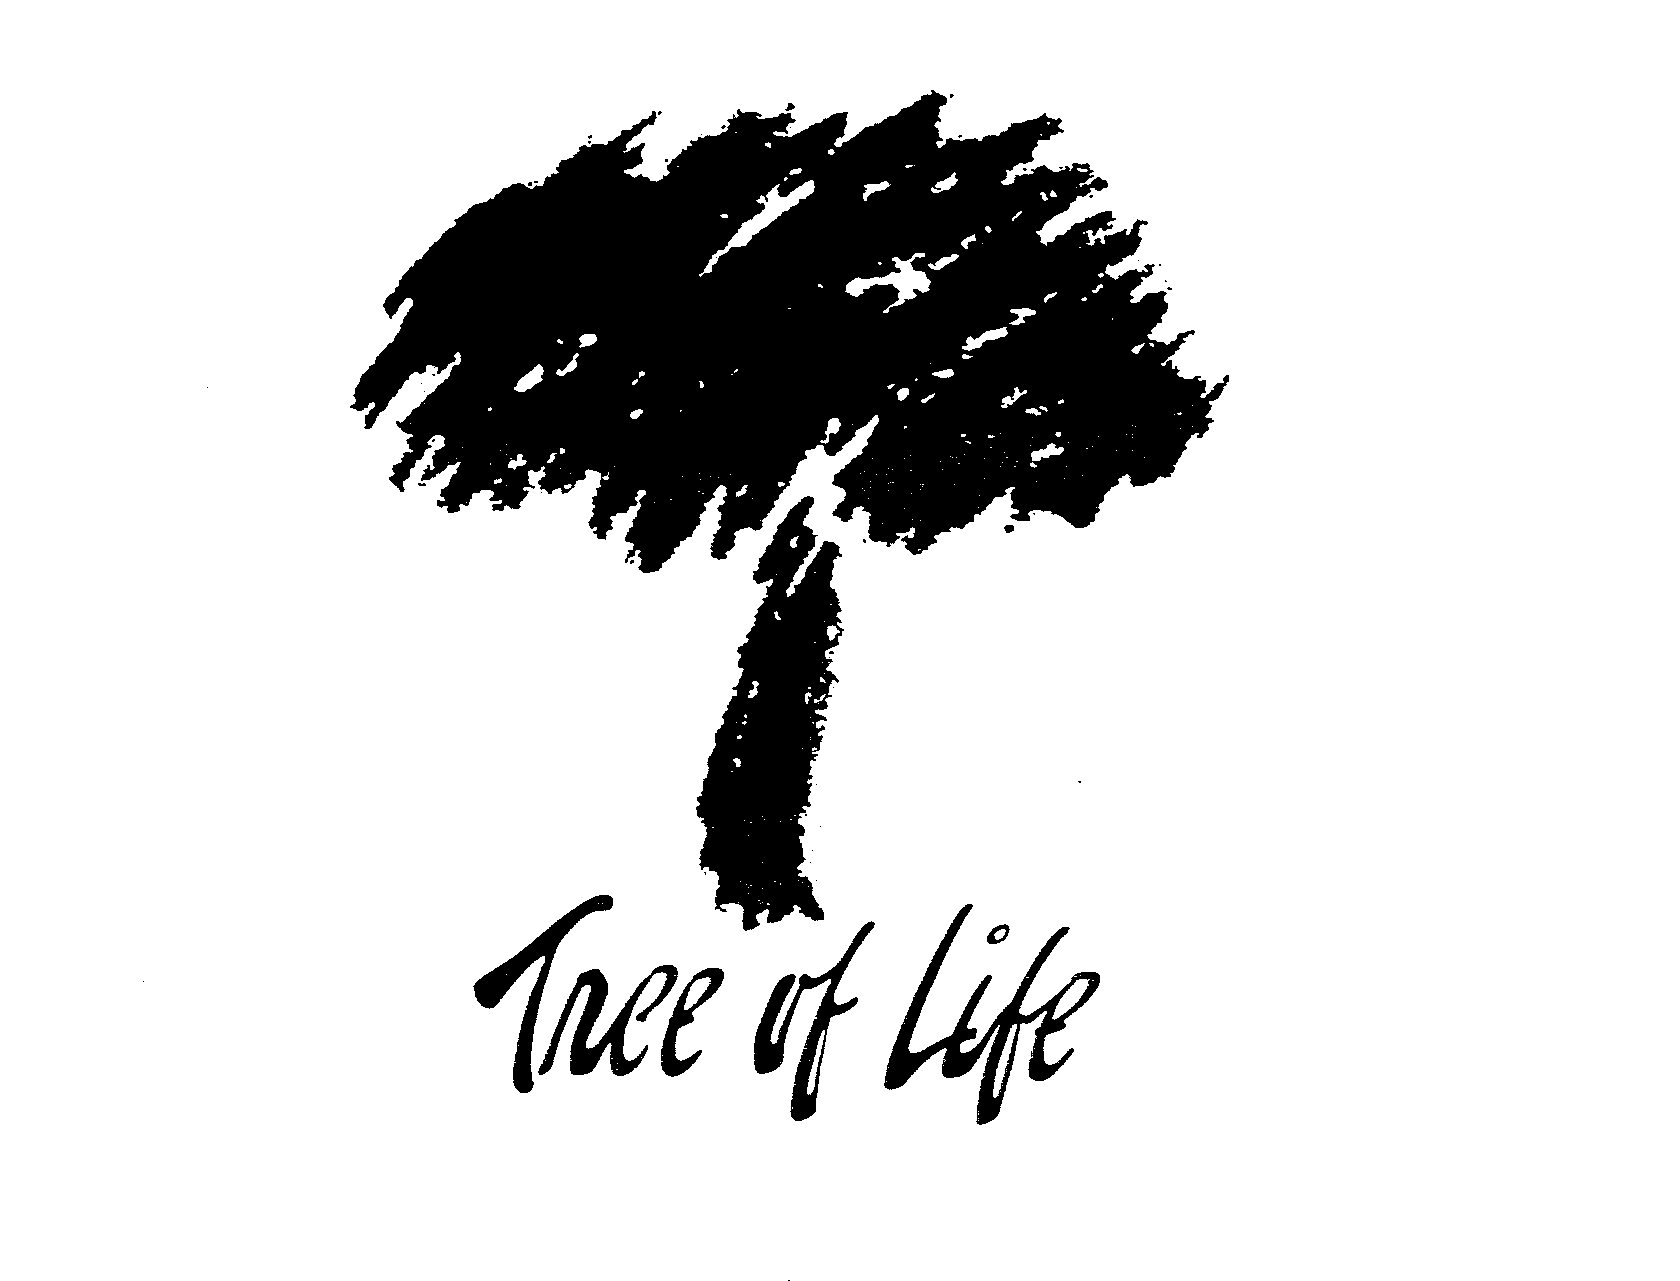 Trademark Logo TREE OF LIFE